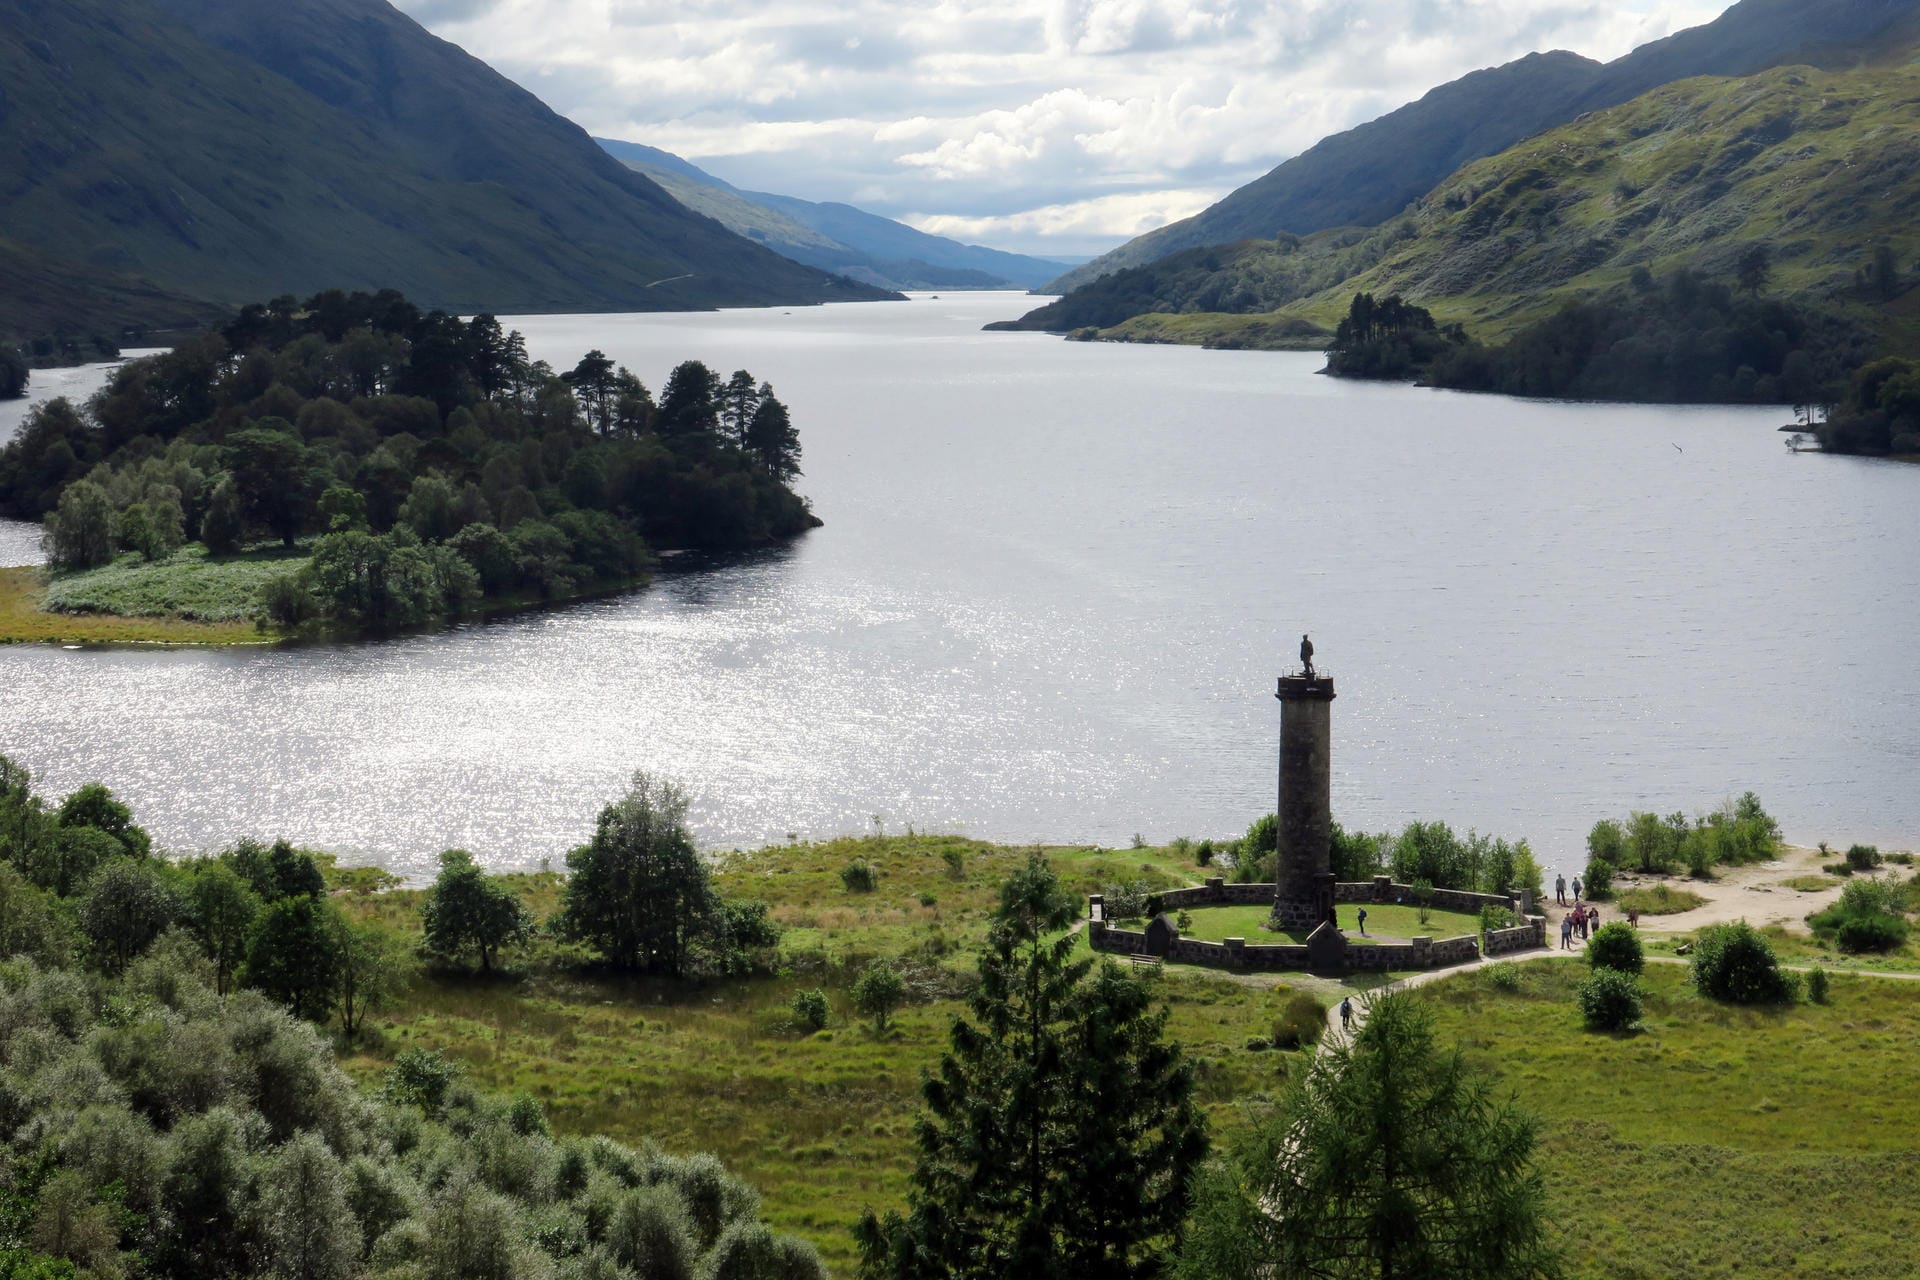 Ein Ort für schottische Patrioten: Das Glenfinnan Monument am Ufer des Loch Shiel erinnert an die gescheiterte Rebellion gegen die Engländer von 1745/46.